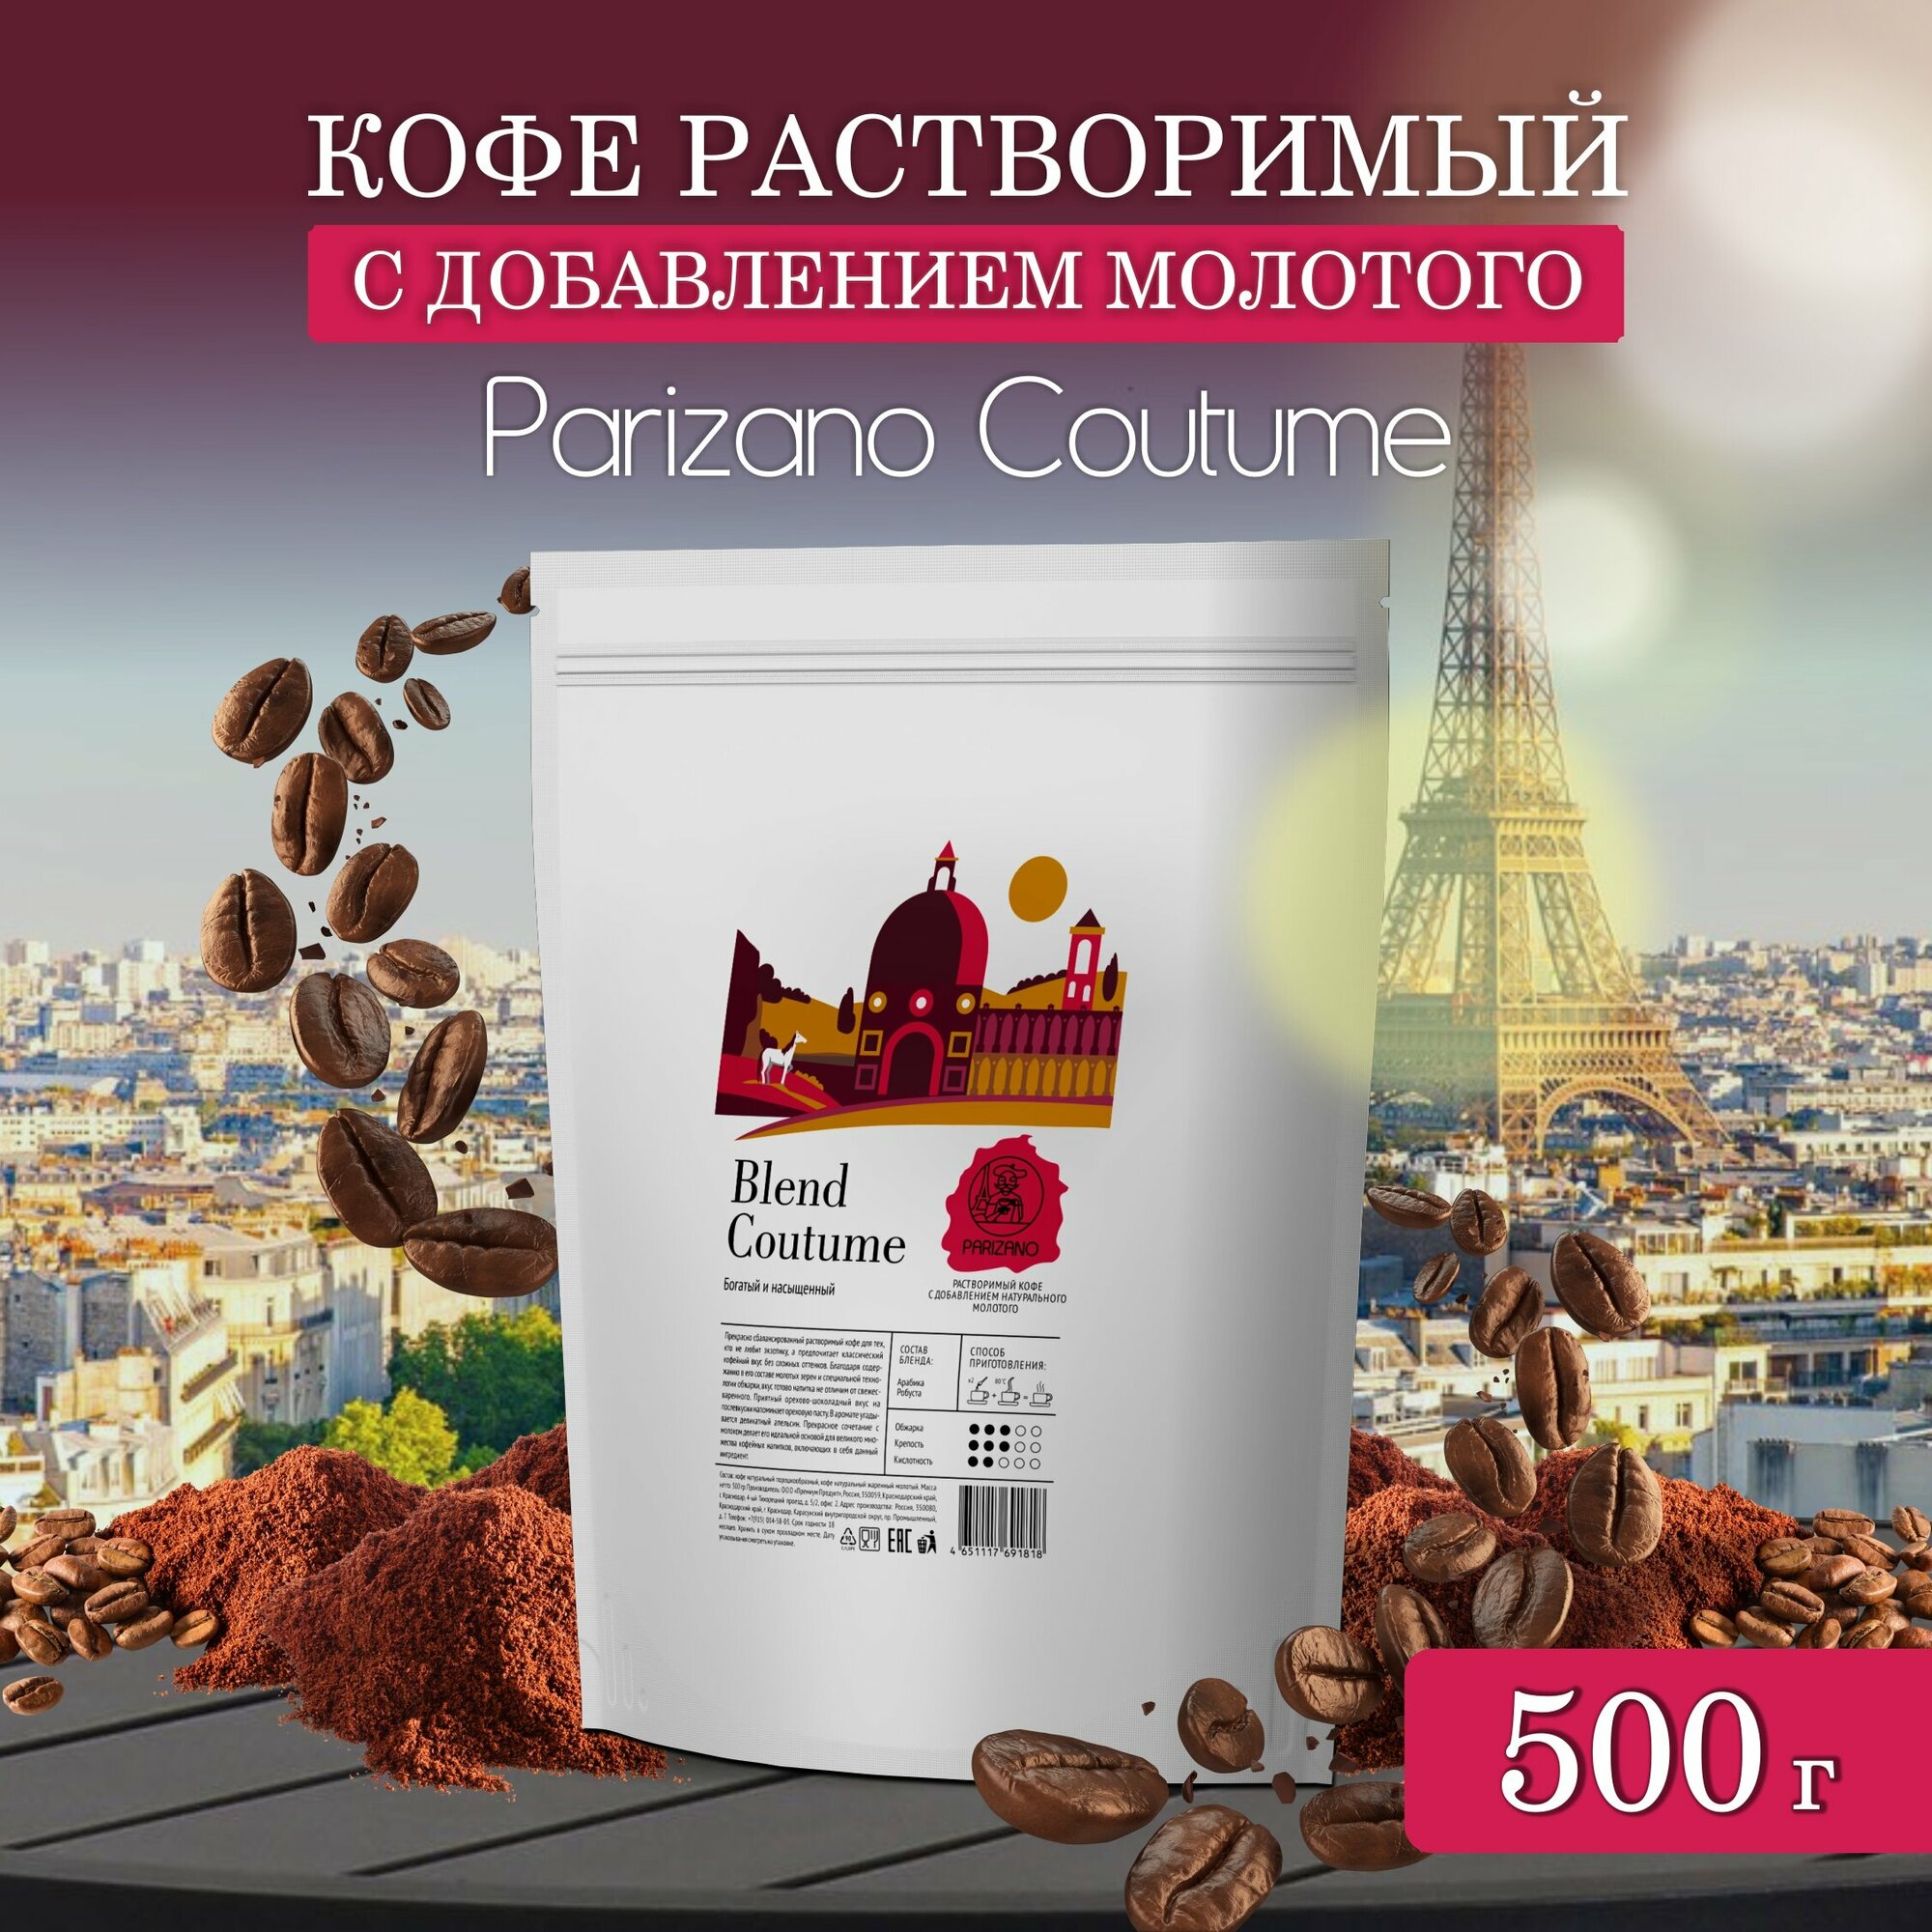 Кофе растворимый 500гр с добавлением натурального жареного молотого кофе Parizano Coutume